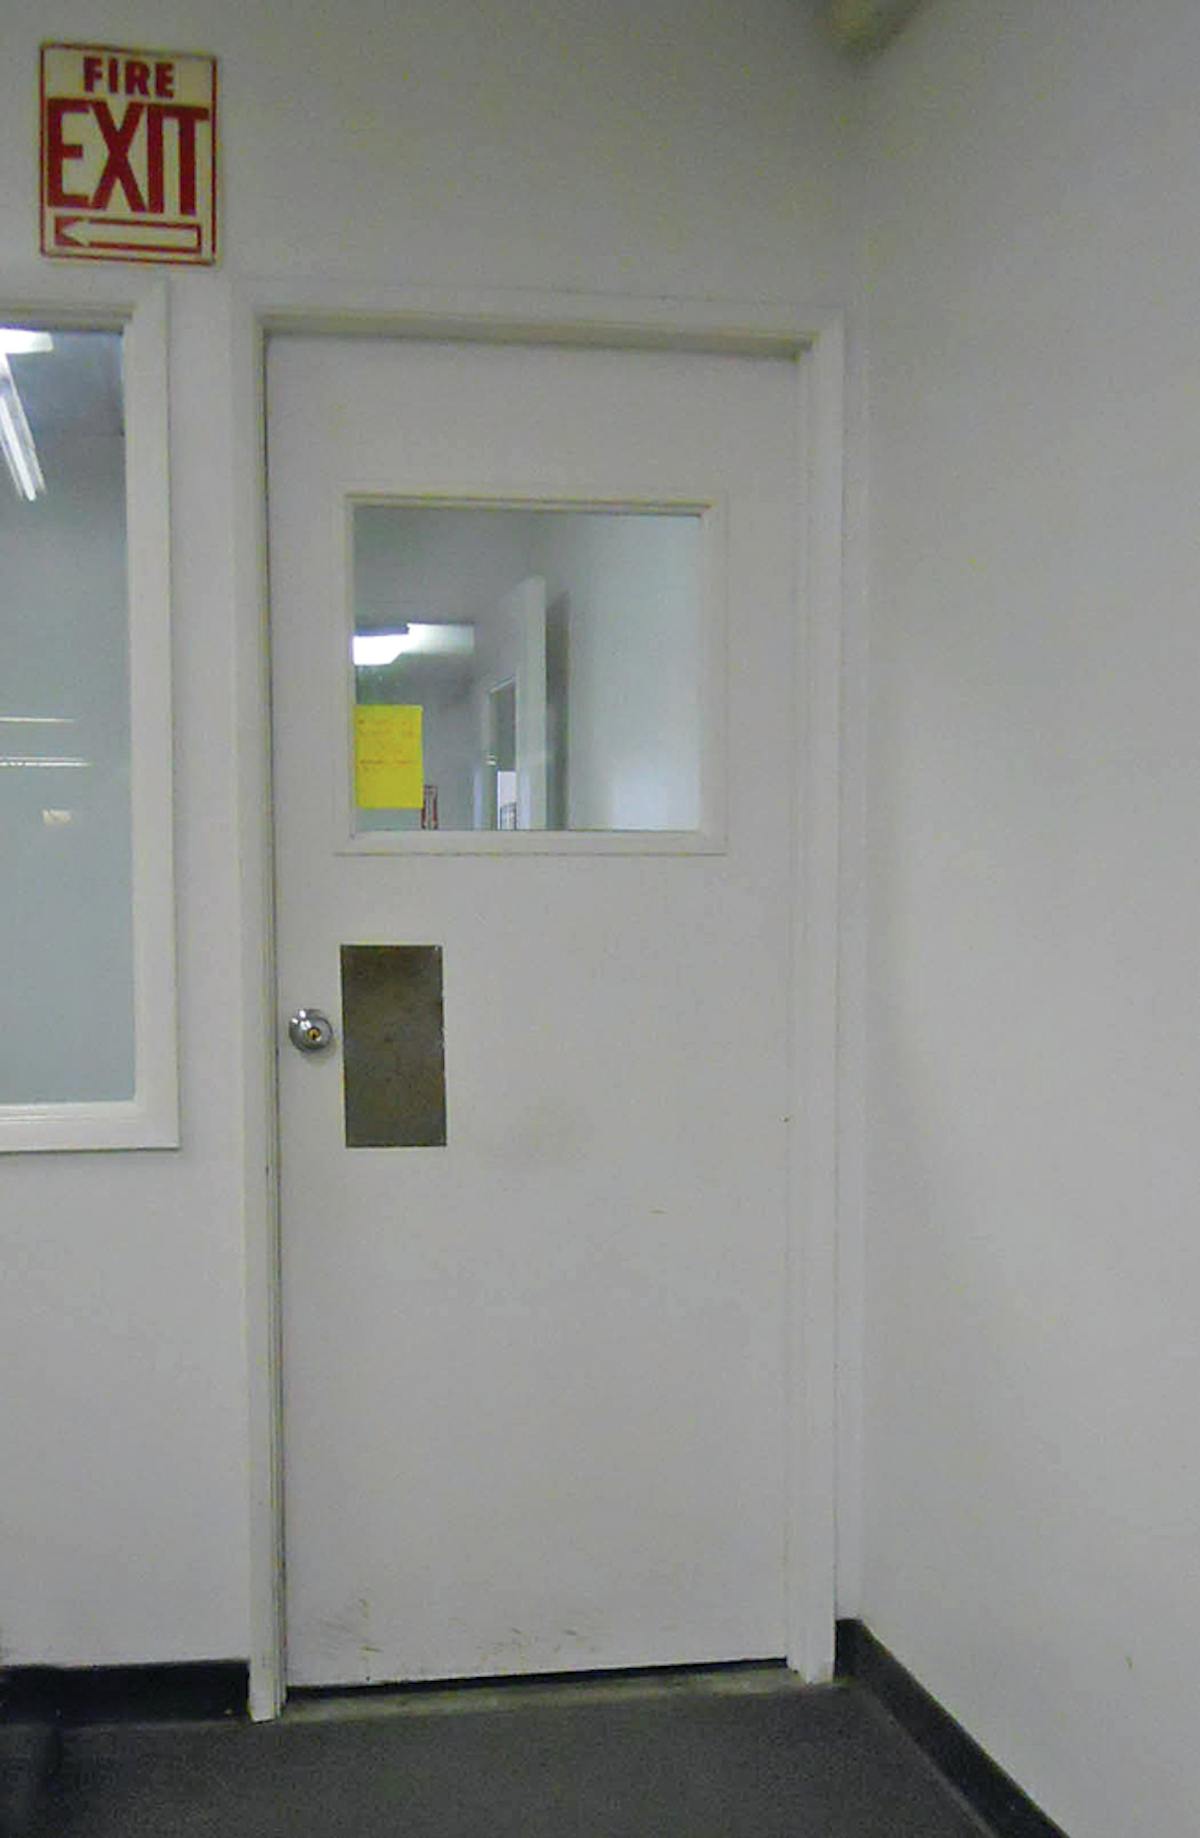 Rear side of door